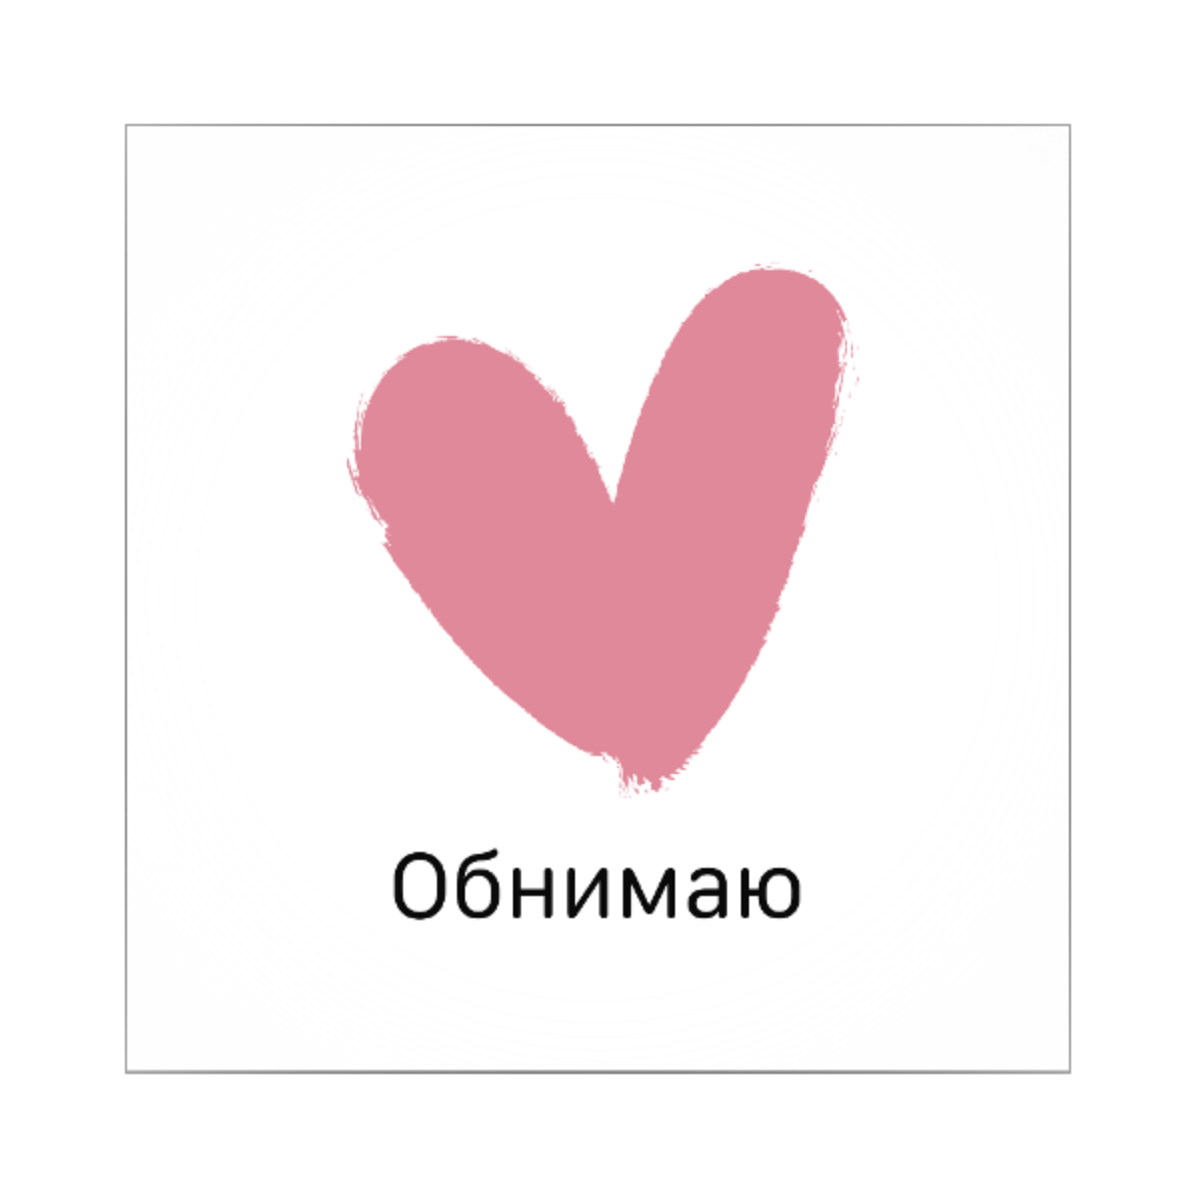 Обнимаю тебя, любимый! Лучшие открытки и пожелания — на украинском